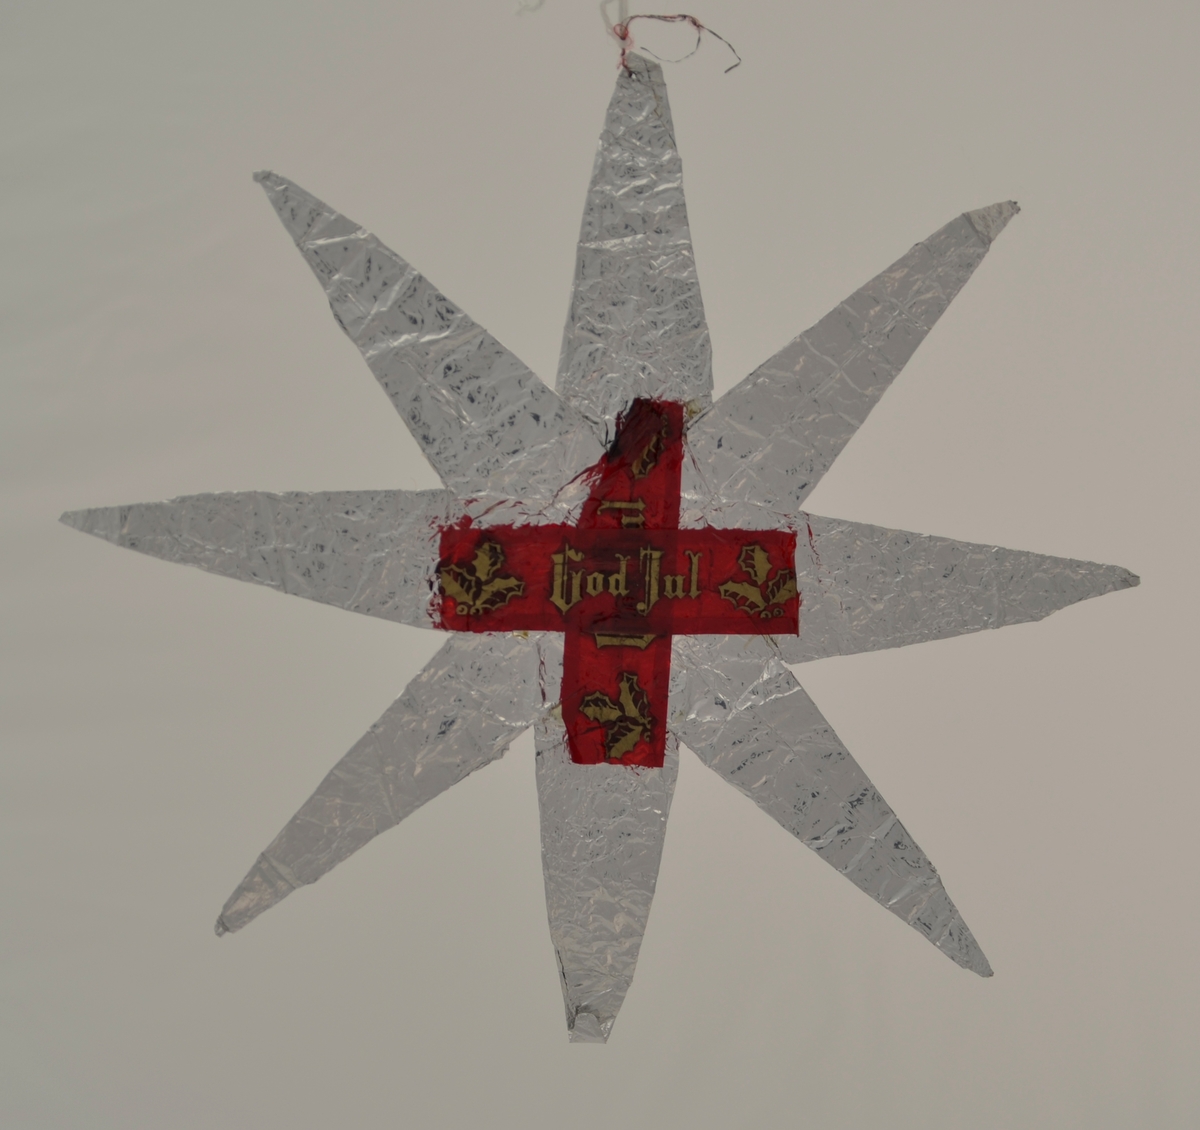 Form: 8-arma stjerne laga av sølvpapir, truleg sjokoladepapir. På kvar side av stjerna er det krosslagt, raudt cellofan med teksten "God Jul" - også dette truleg opphaveleg sjokoladepapir.